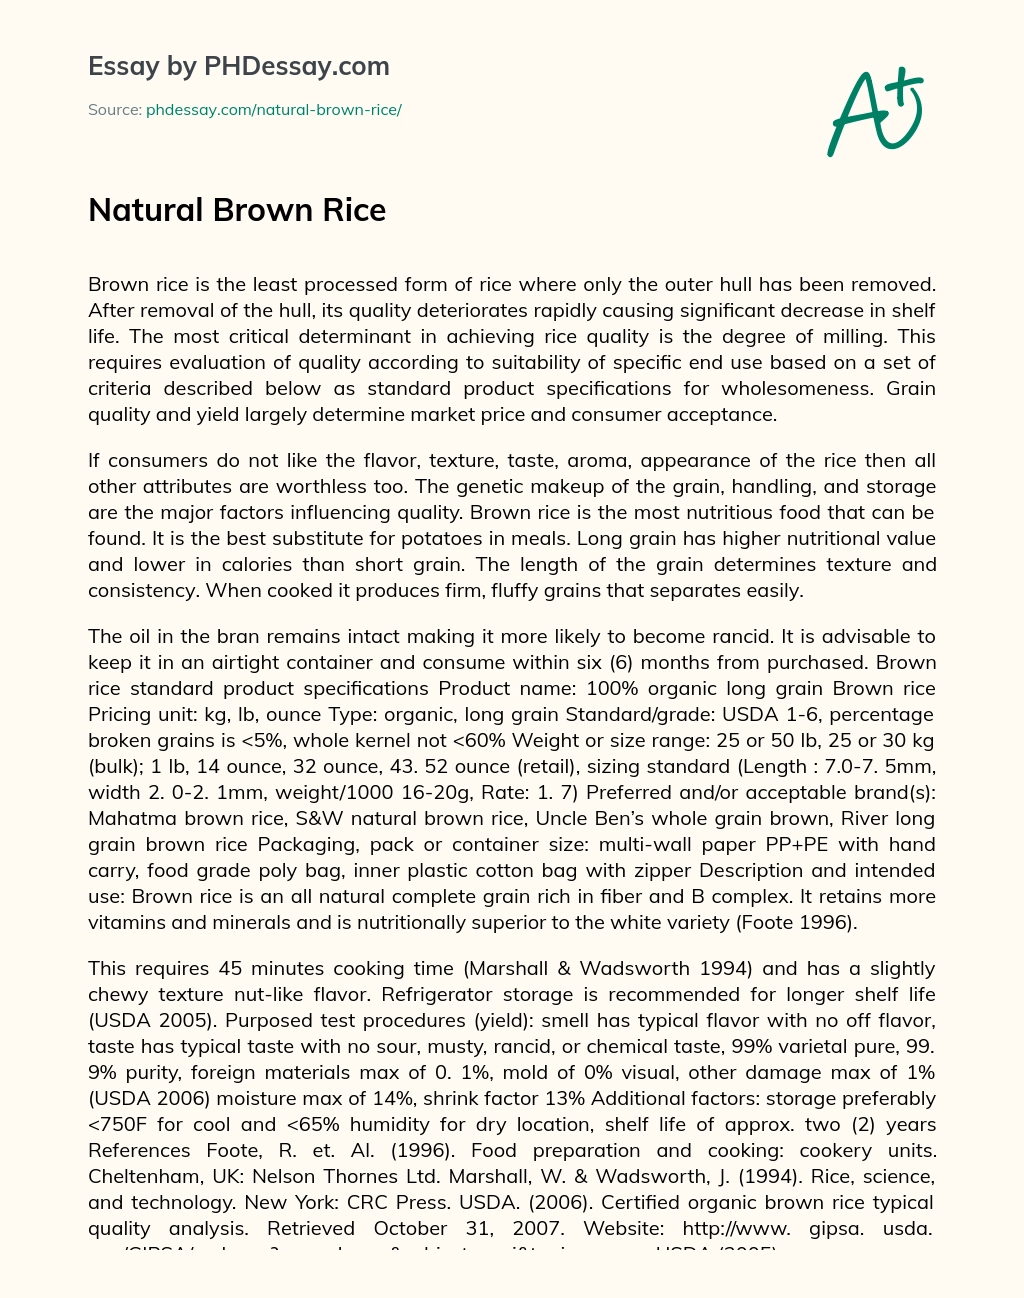 Natural Brown Rice essay